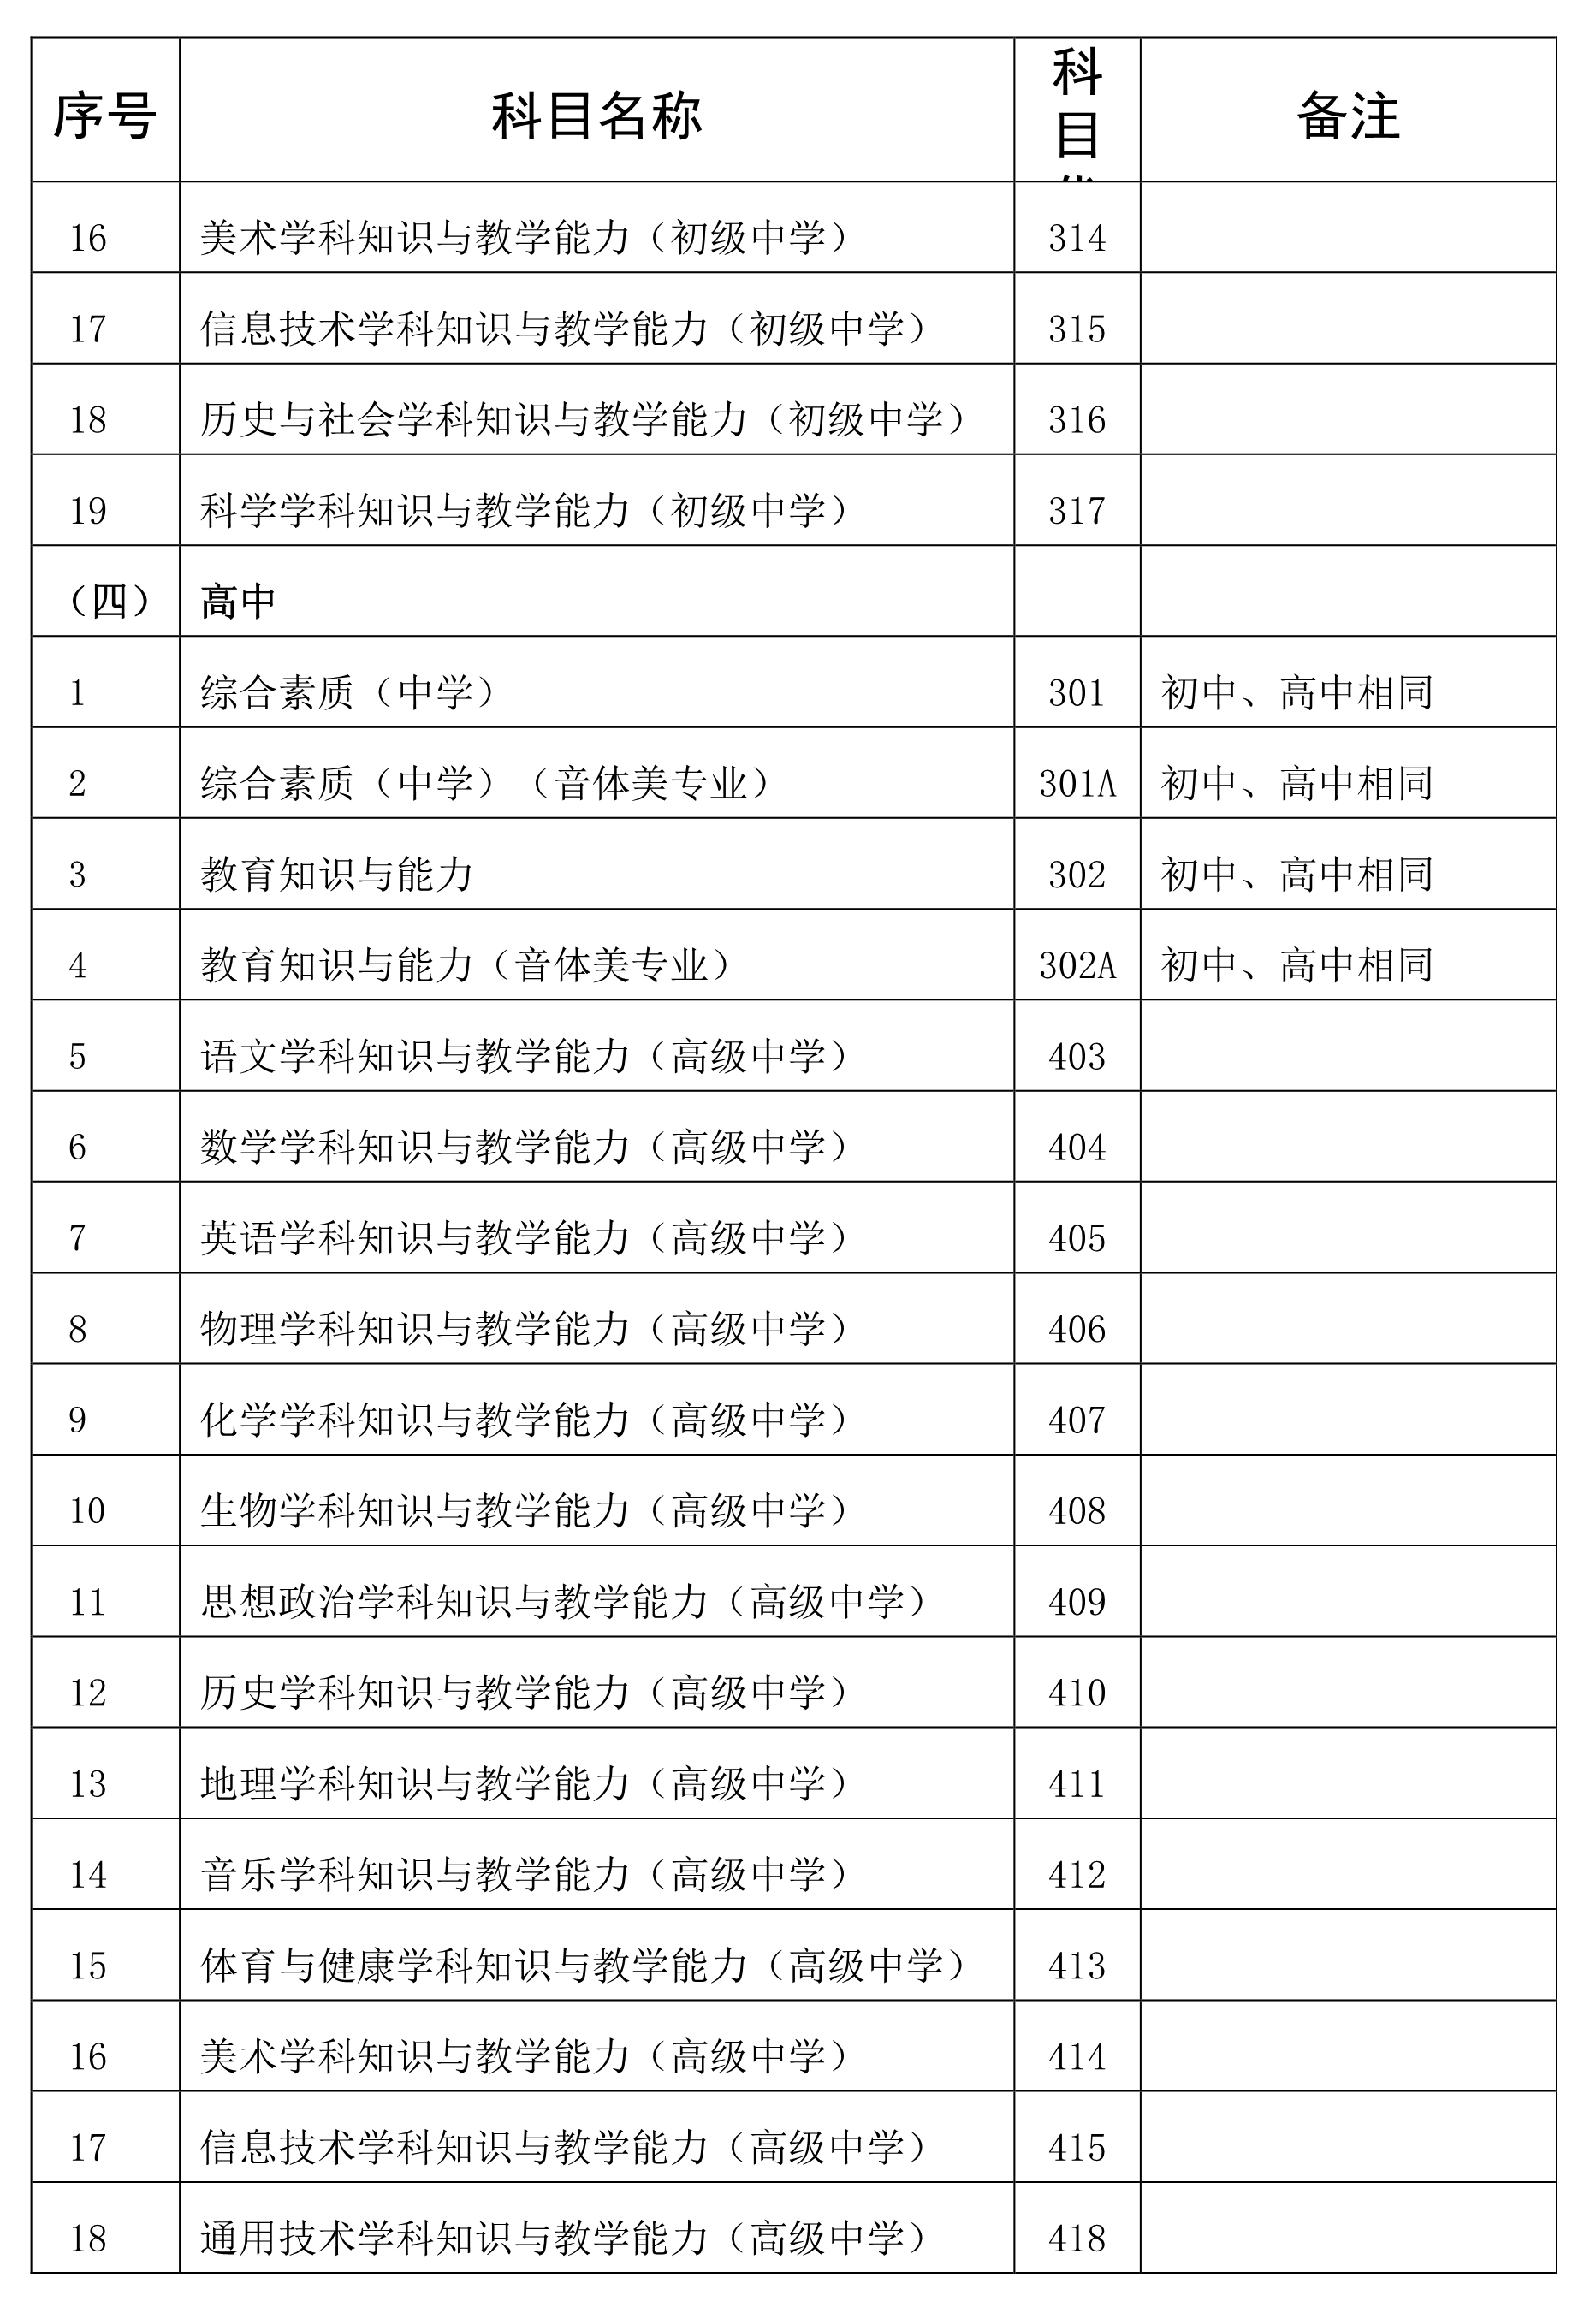 海南省2020年下半年教师资格考试笔试公告